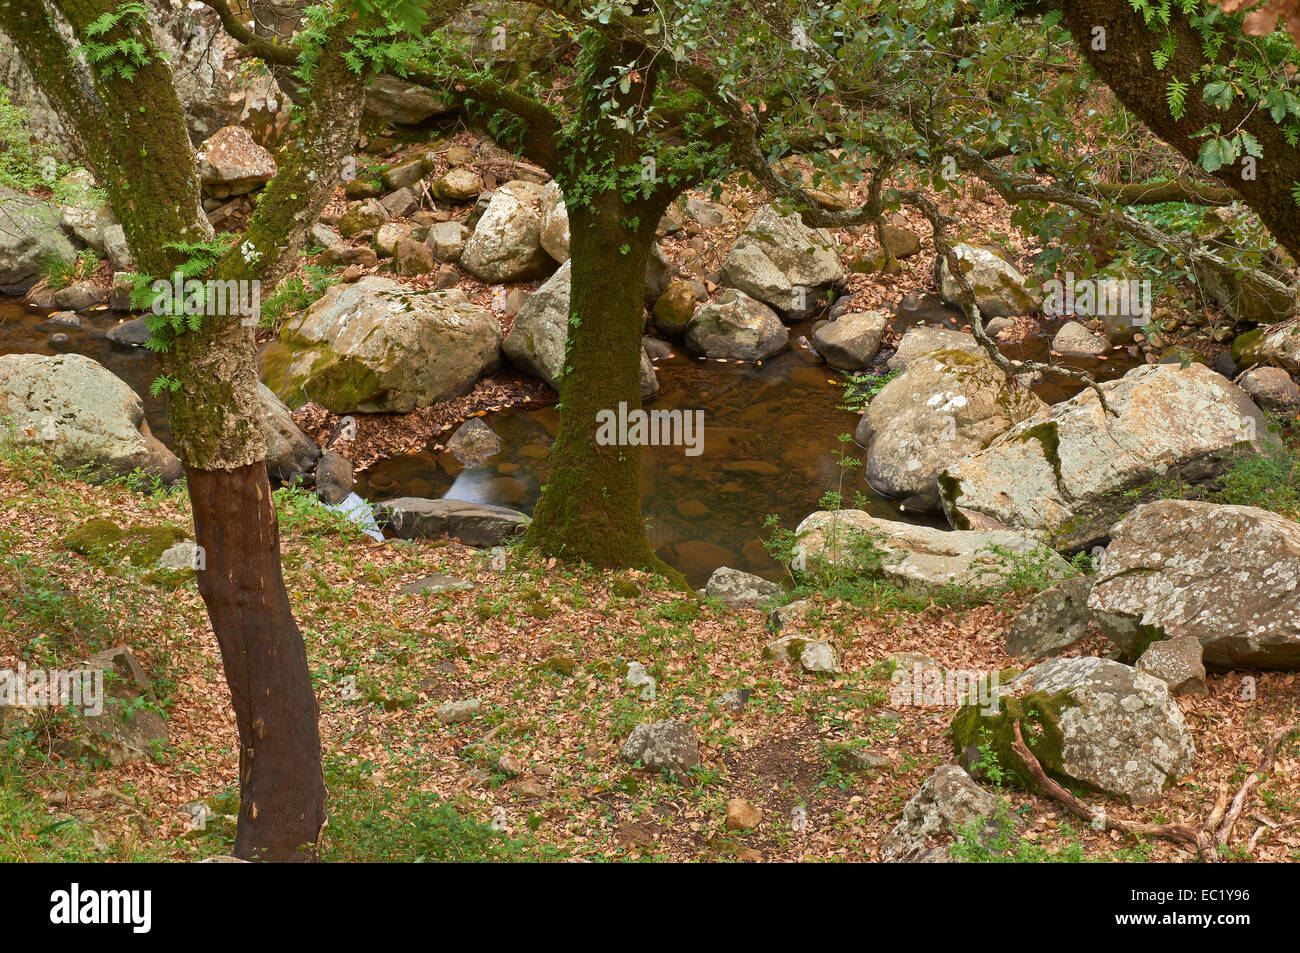 Le querce da sughero (Quercus suber), La Sauceda, Los Parco naturale de los Alcornocales, provincia di Malaga, Andalusia, Spagna, Europa Foto Stock